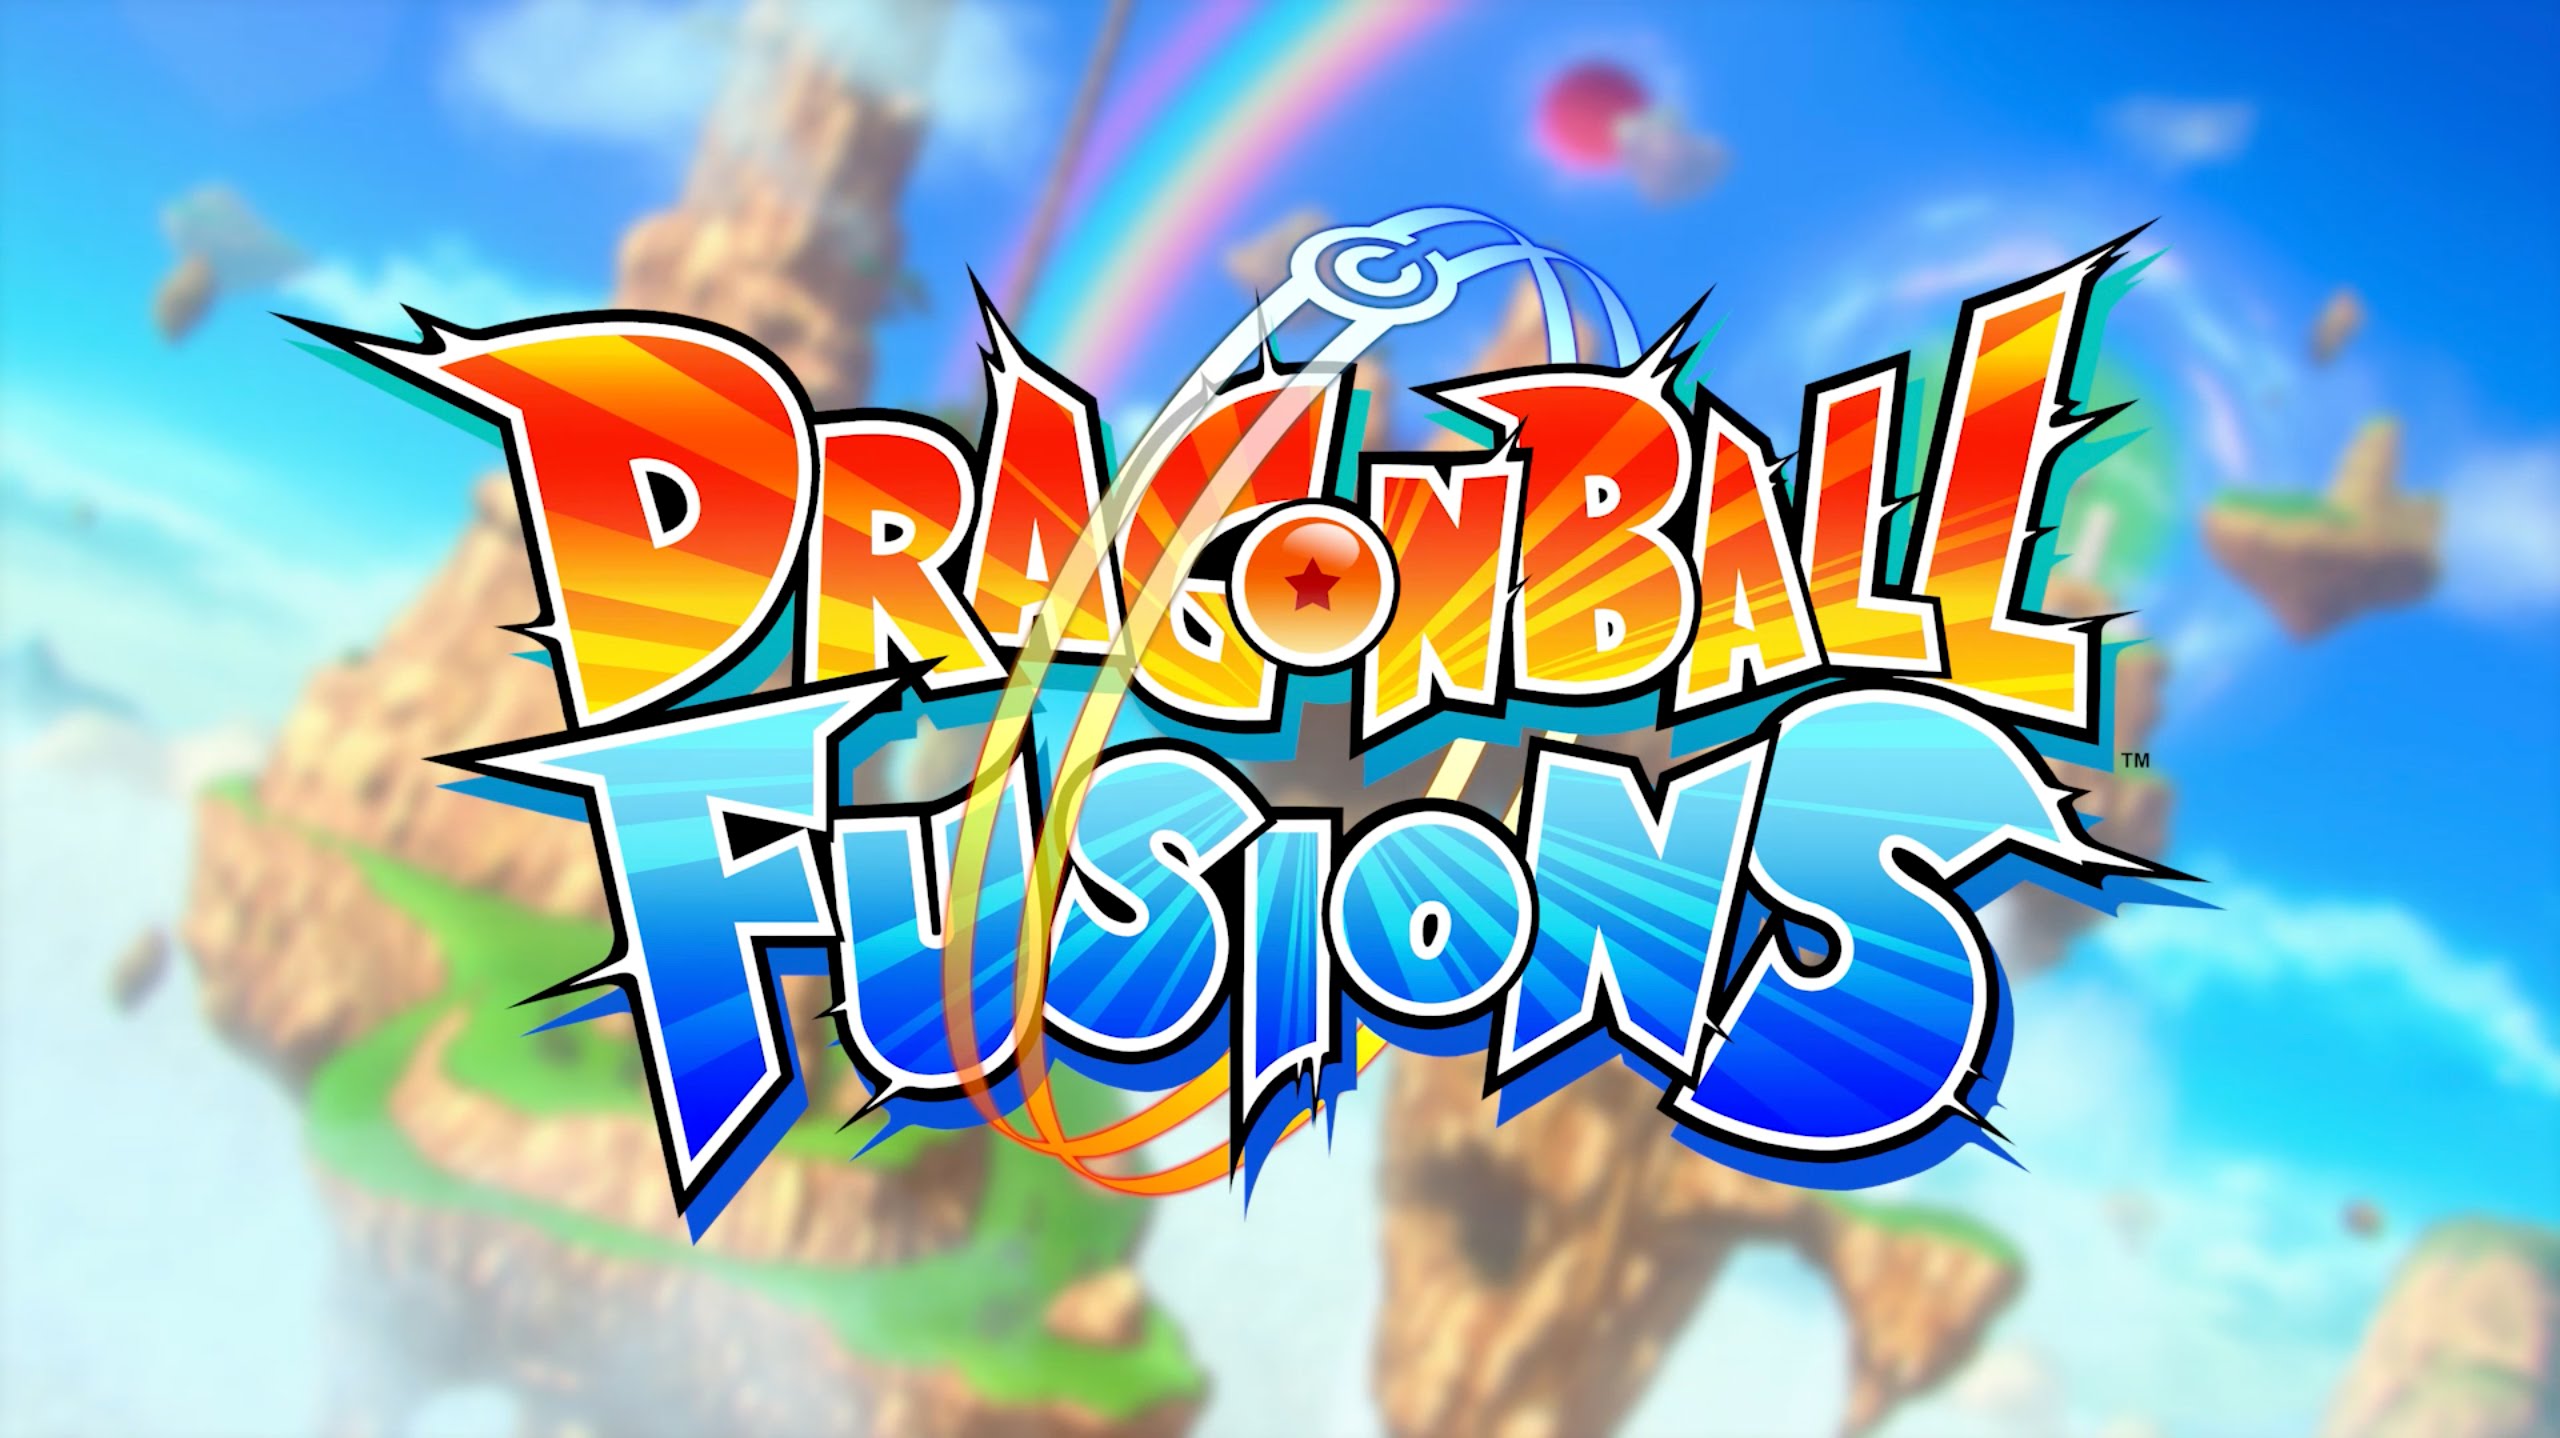 No te pierdas los mejores trucos para jugar Dragon Ball Fusions 3DS